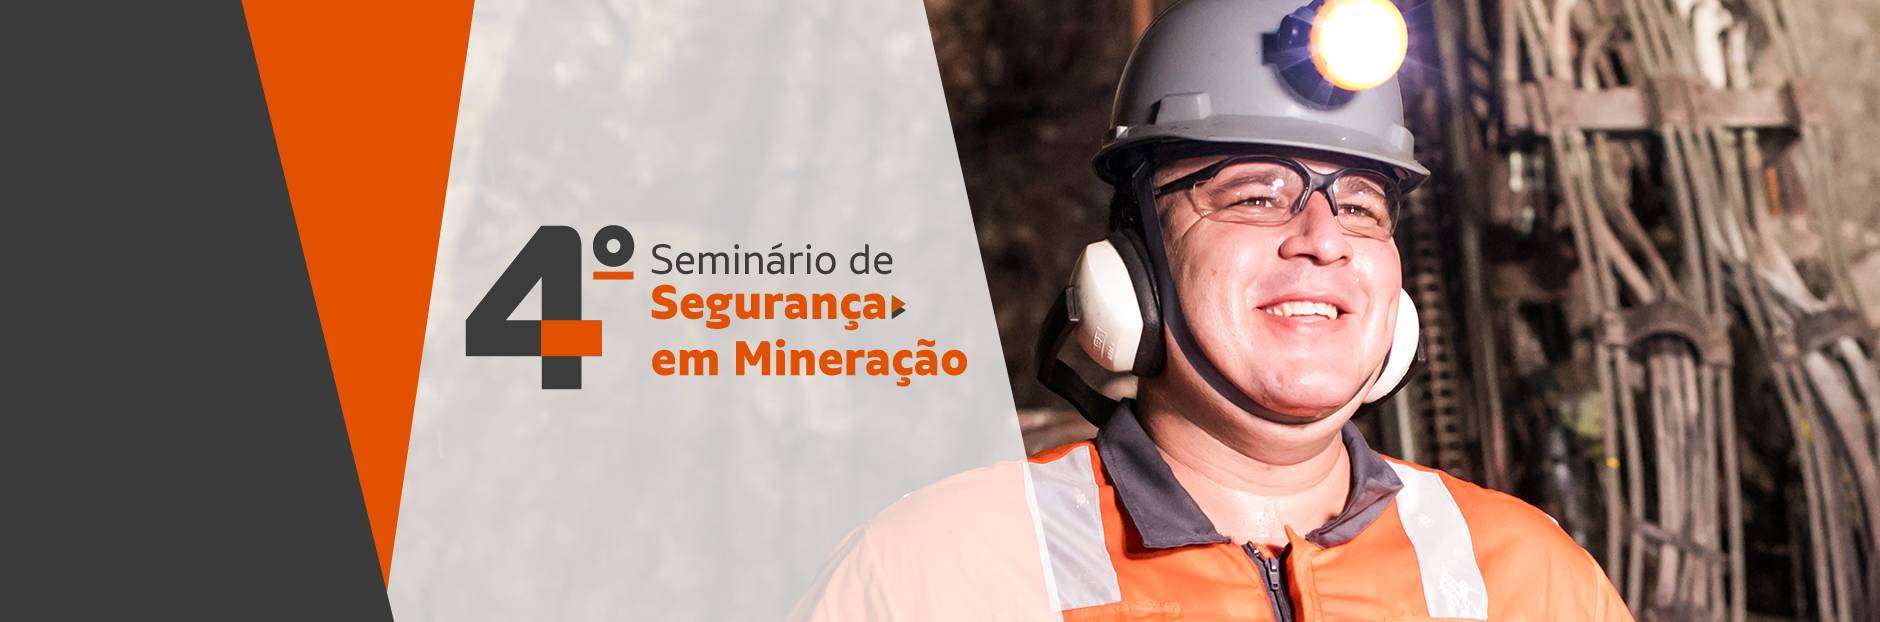 Banner 4 seminário de segurança em mineração